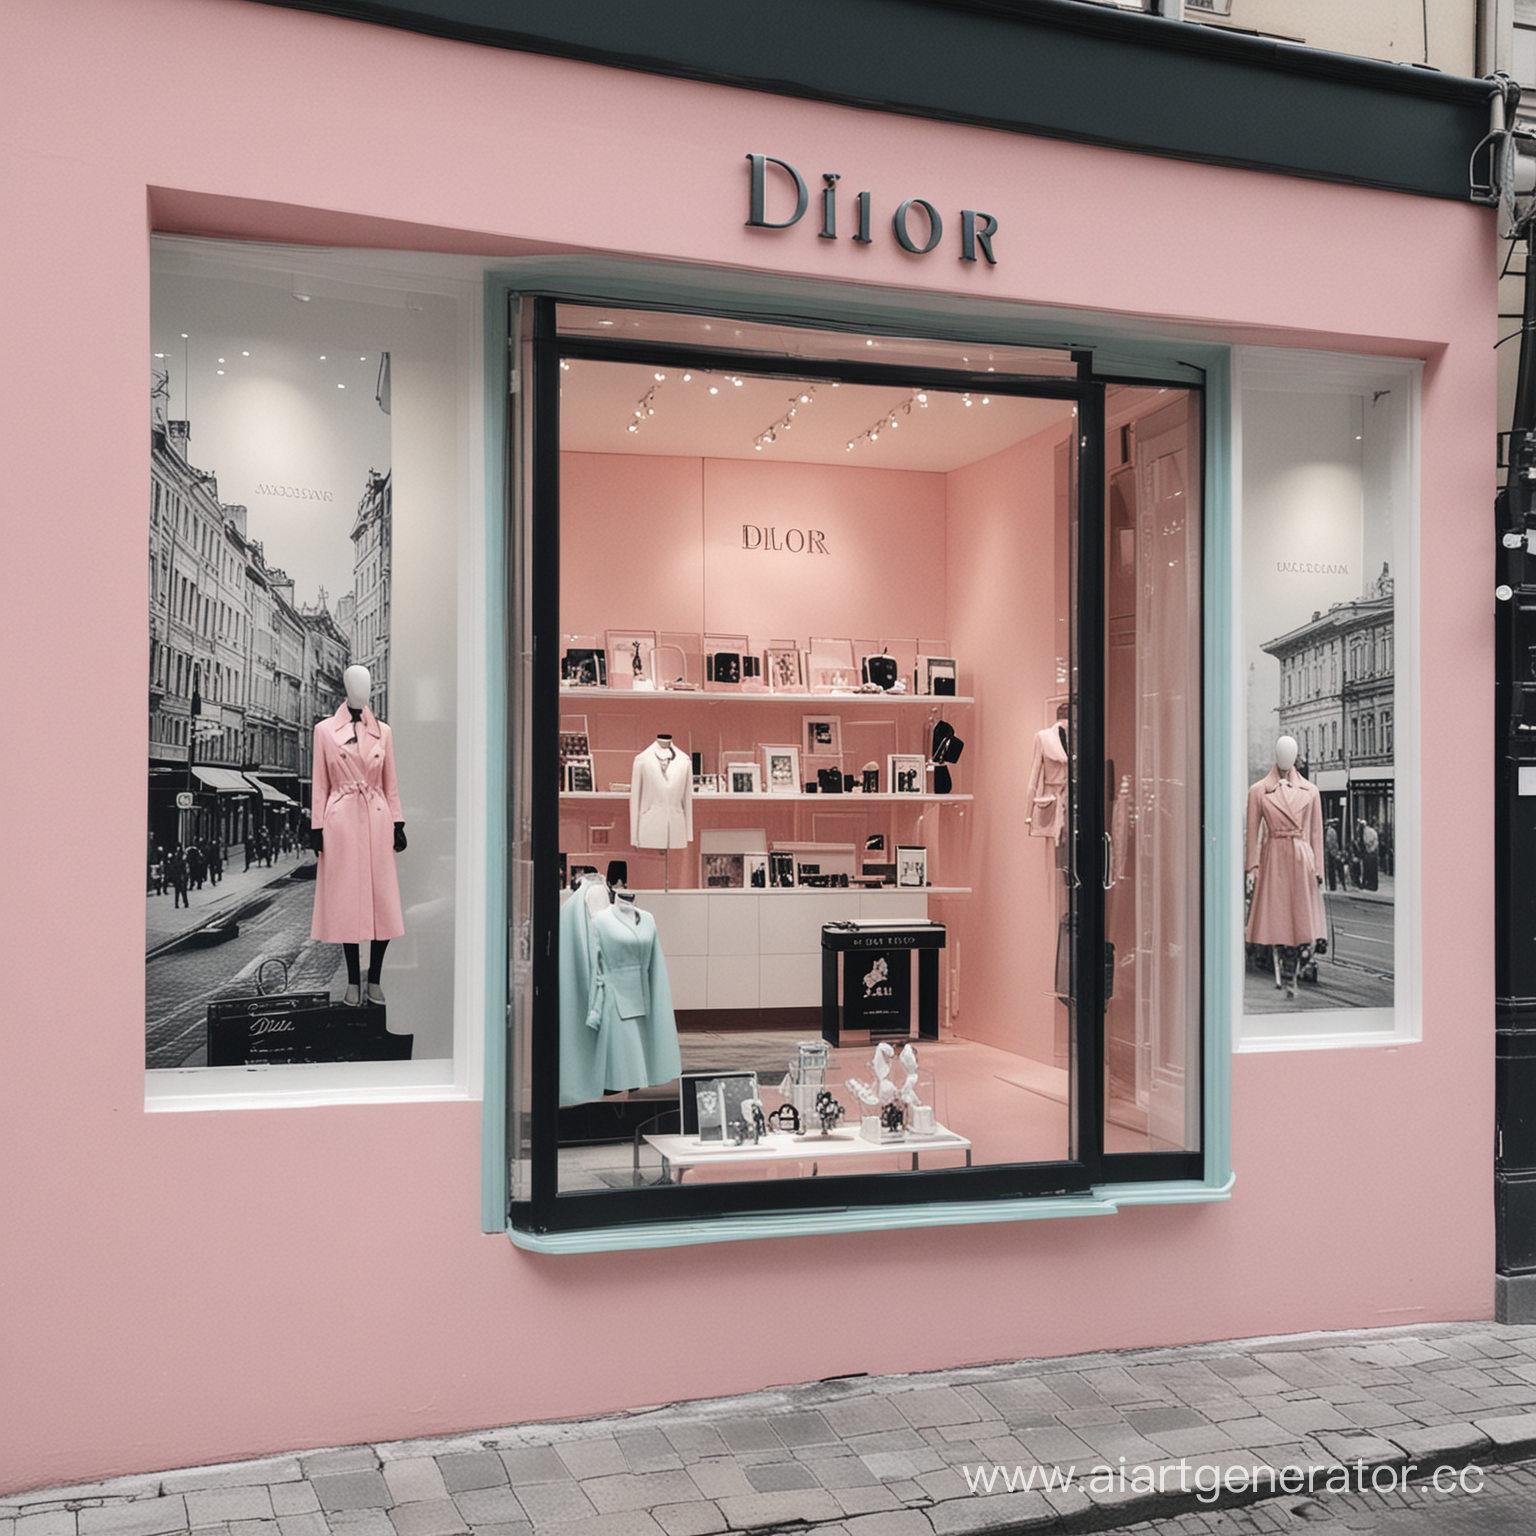 Сделать витрину магазина Dior. На заднем плане на стене фотографии Швеции и Норвегии. Цветовая гамма должна состоять из белого, черного, бирюзового и розового цветов